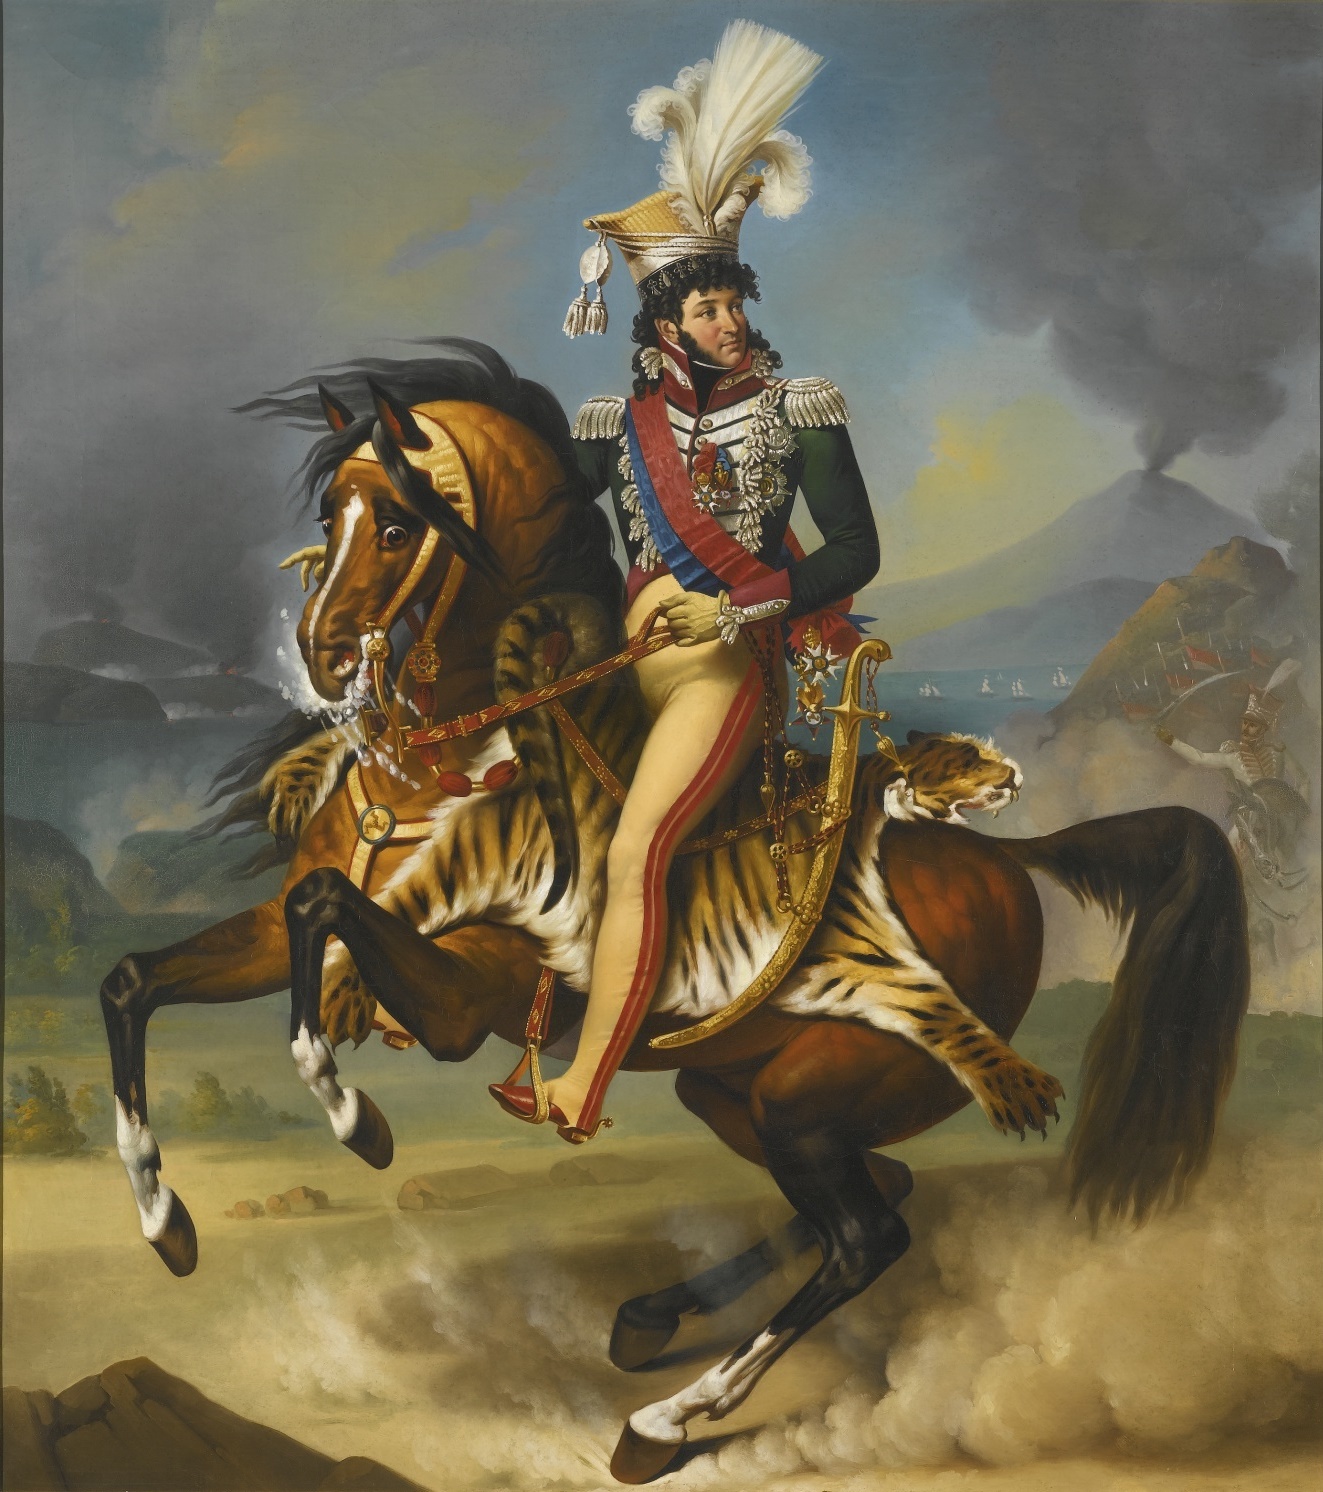 Антуан Жан Гро. "Портрет Мюрата, короля Неаполя". 1812.